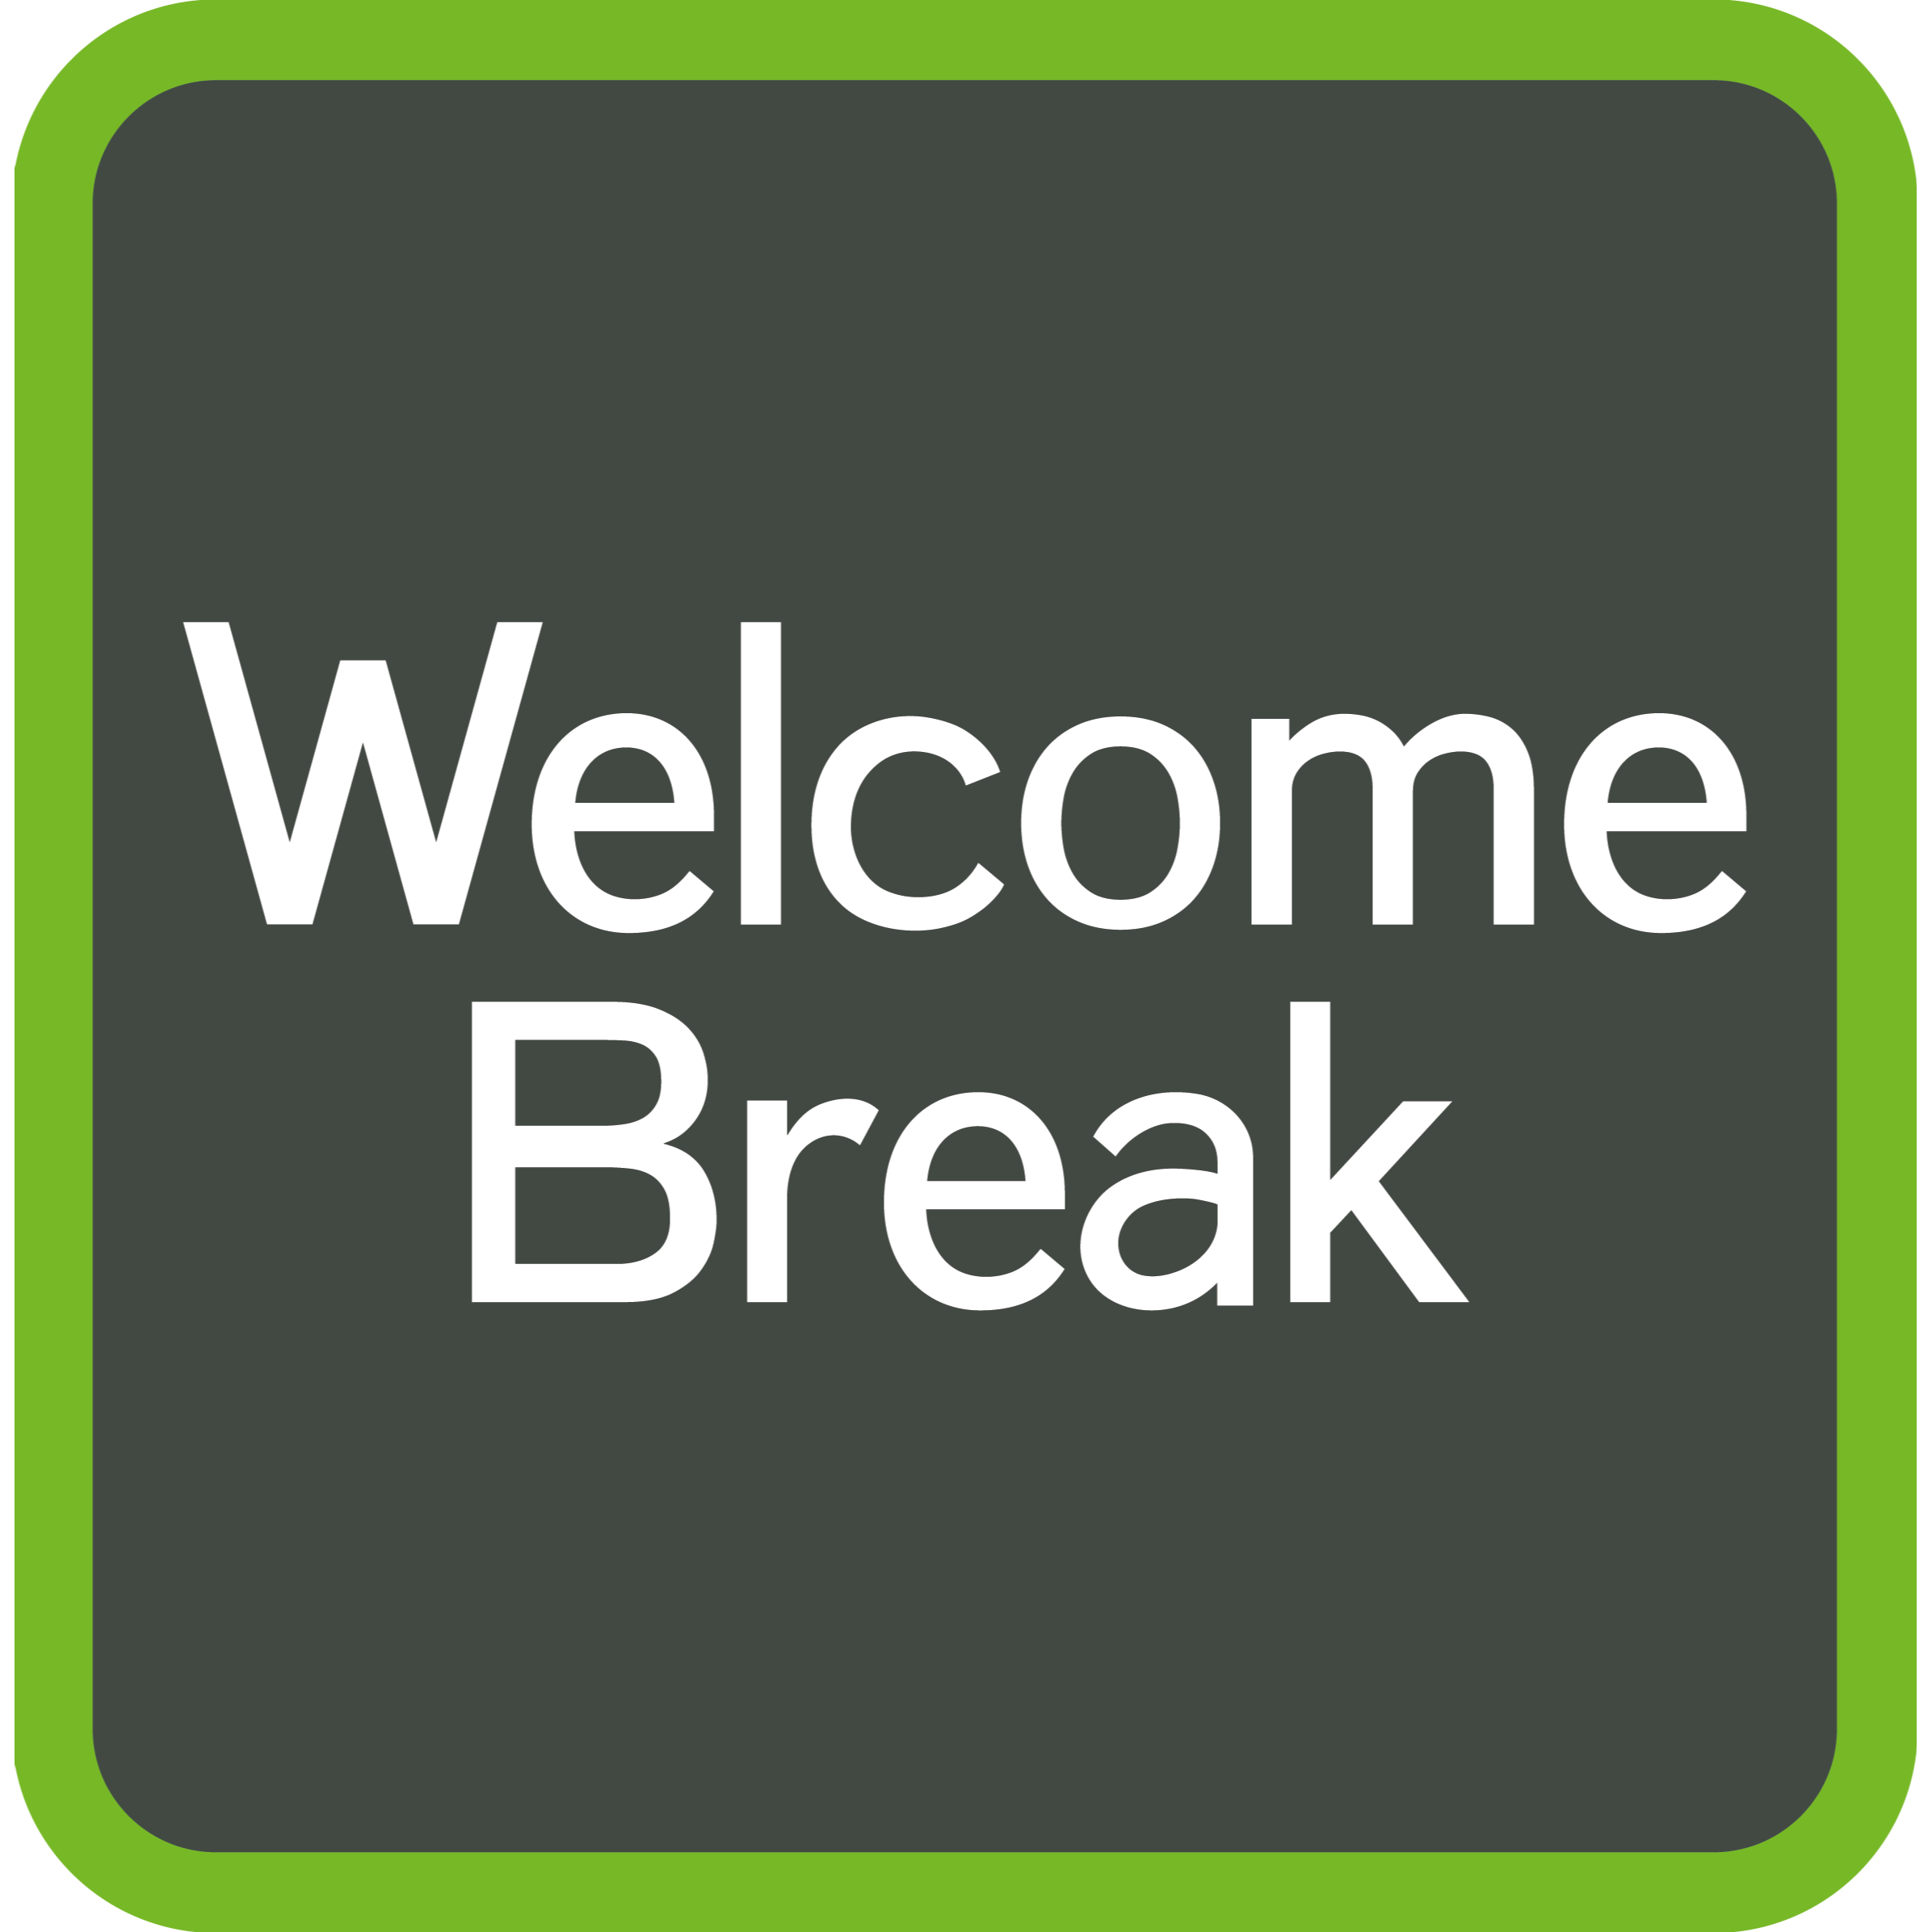 Welcome Break Logo Applegreen Wyboston Services A1 Wyboston 01908 299700